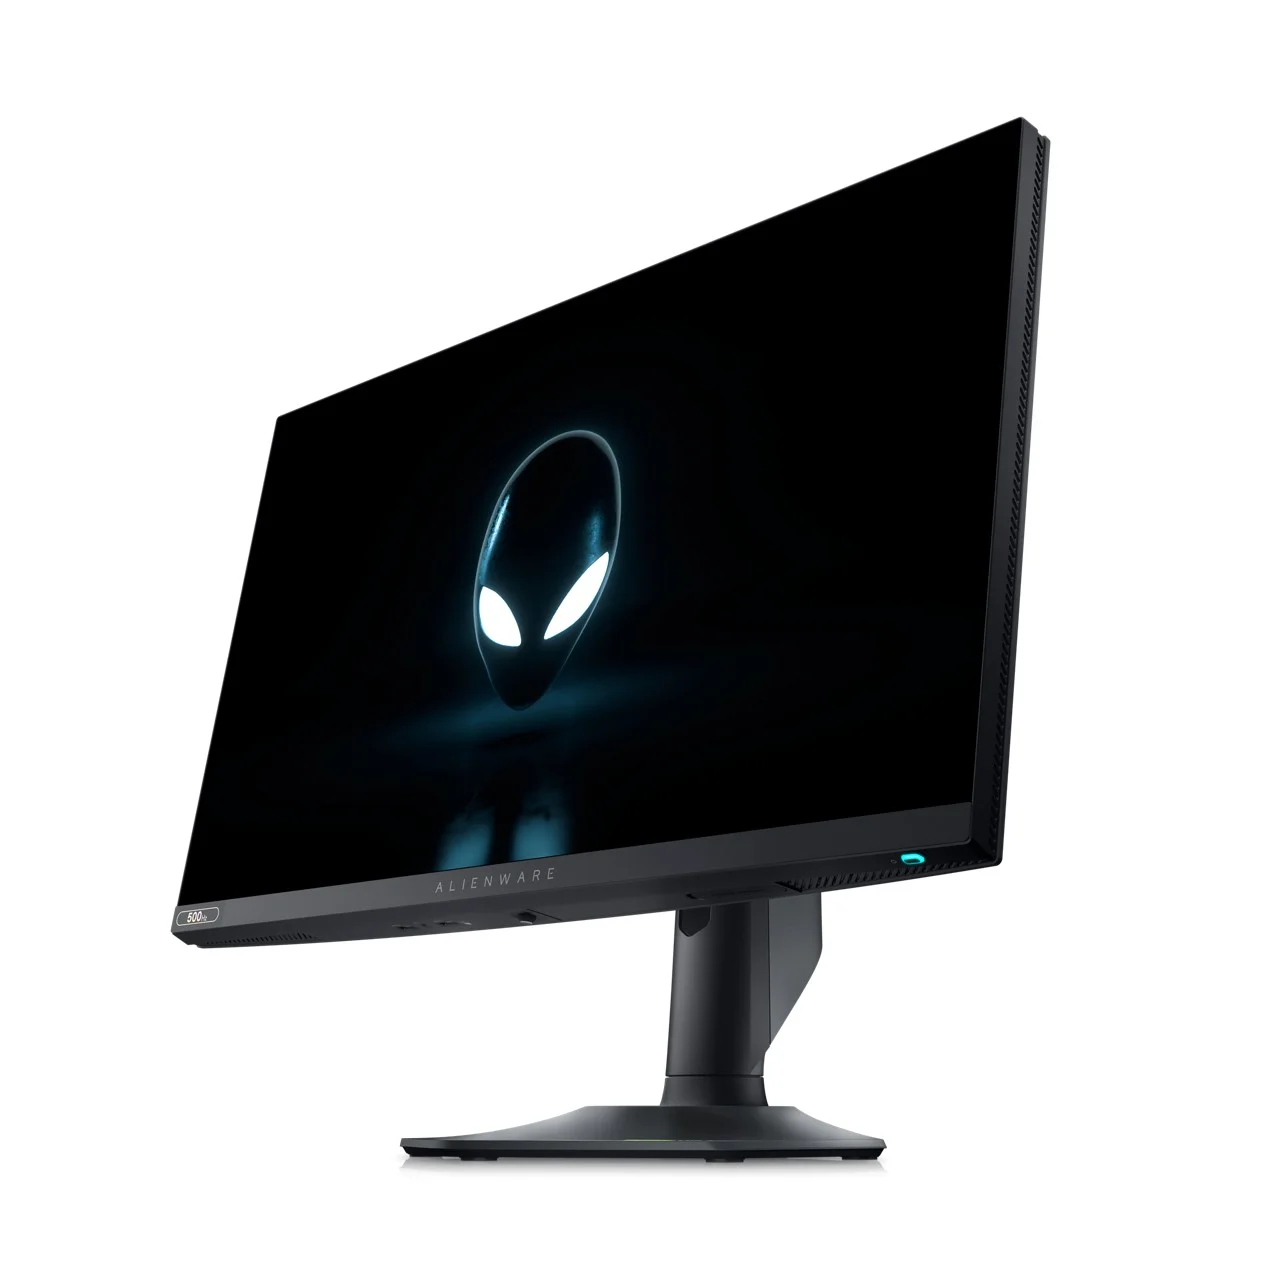 Dell al CES 2023: presentati l'Alienware Gaming Monitor a 500Hz